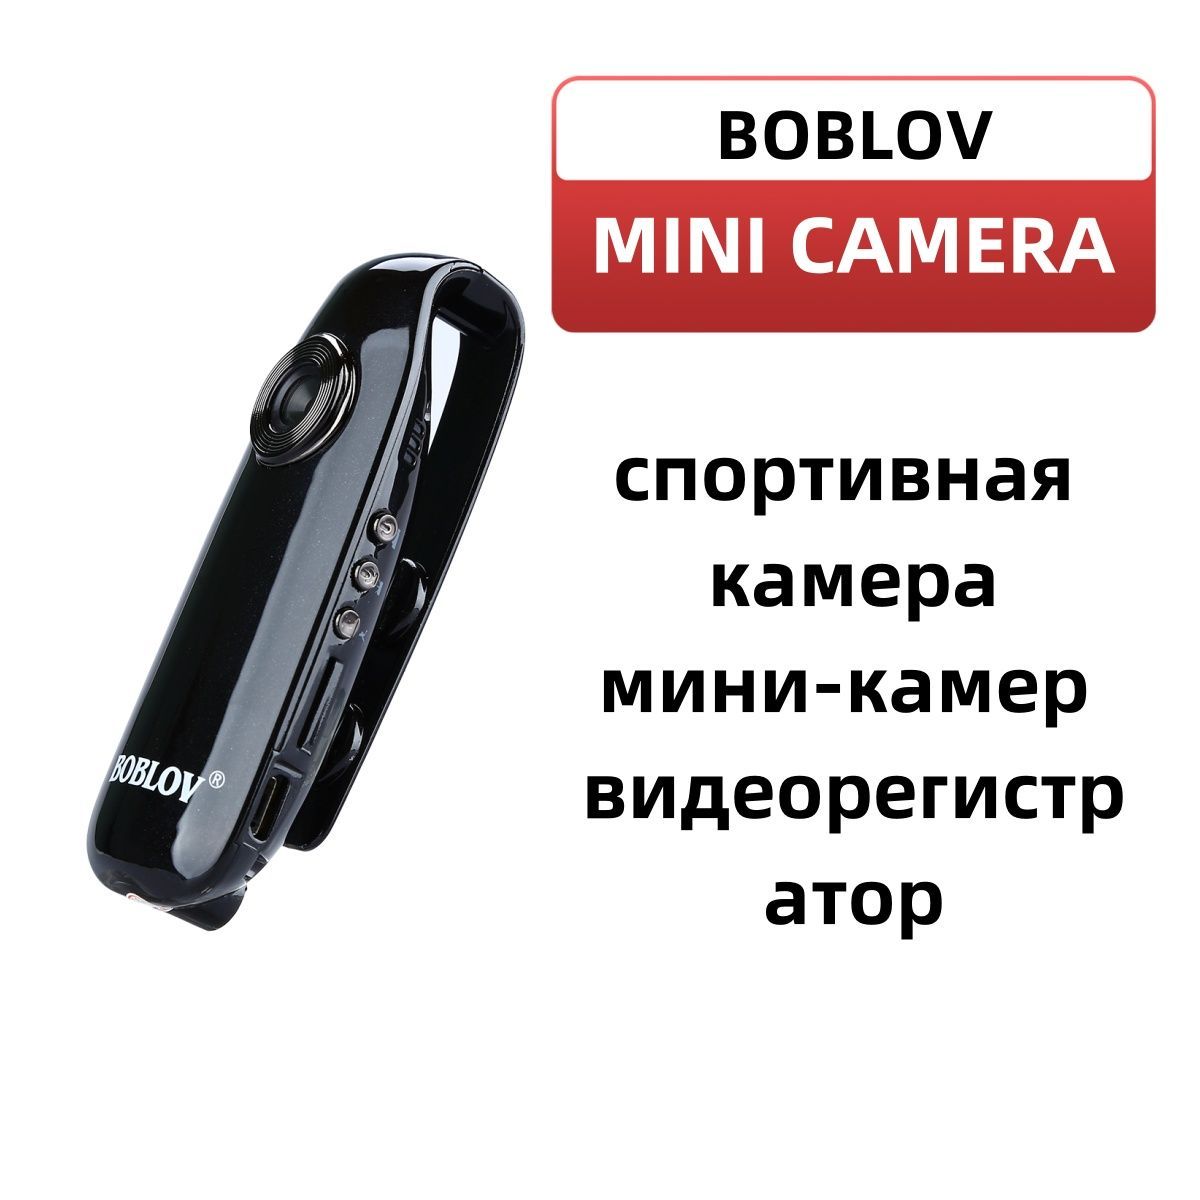 Отобранные товары: ручка с камерой